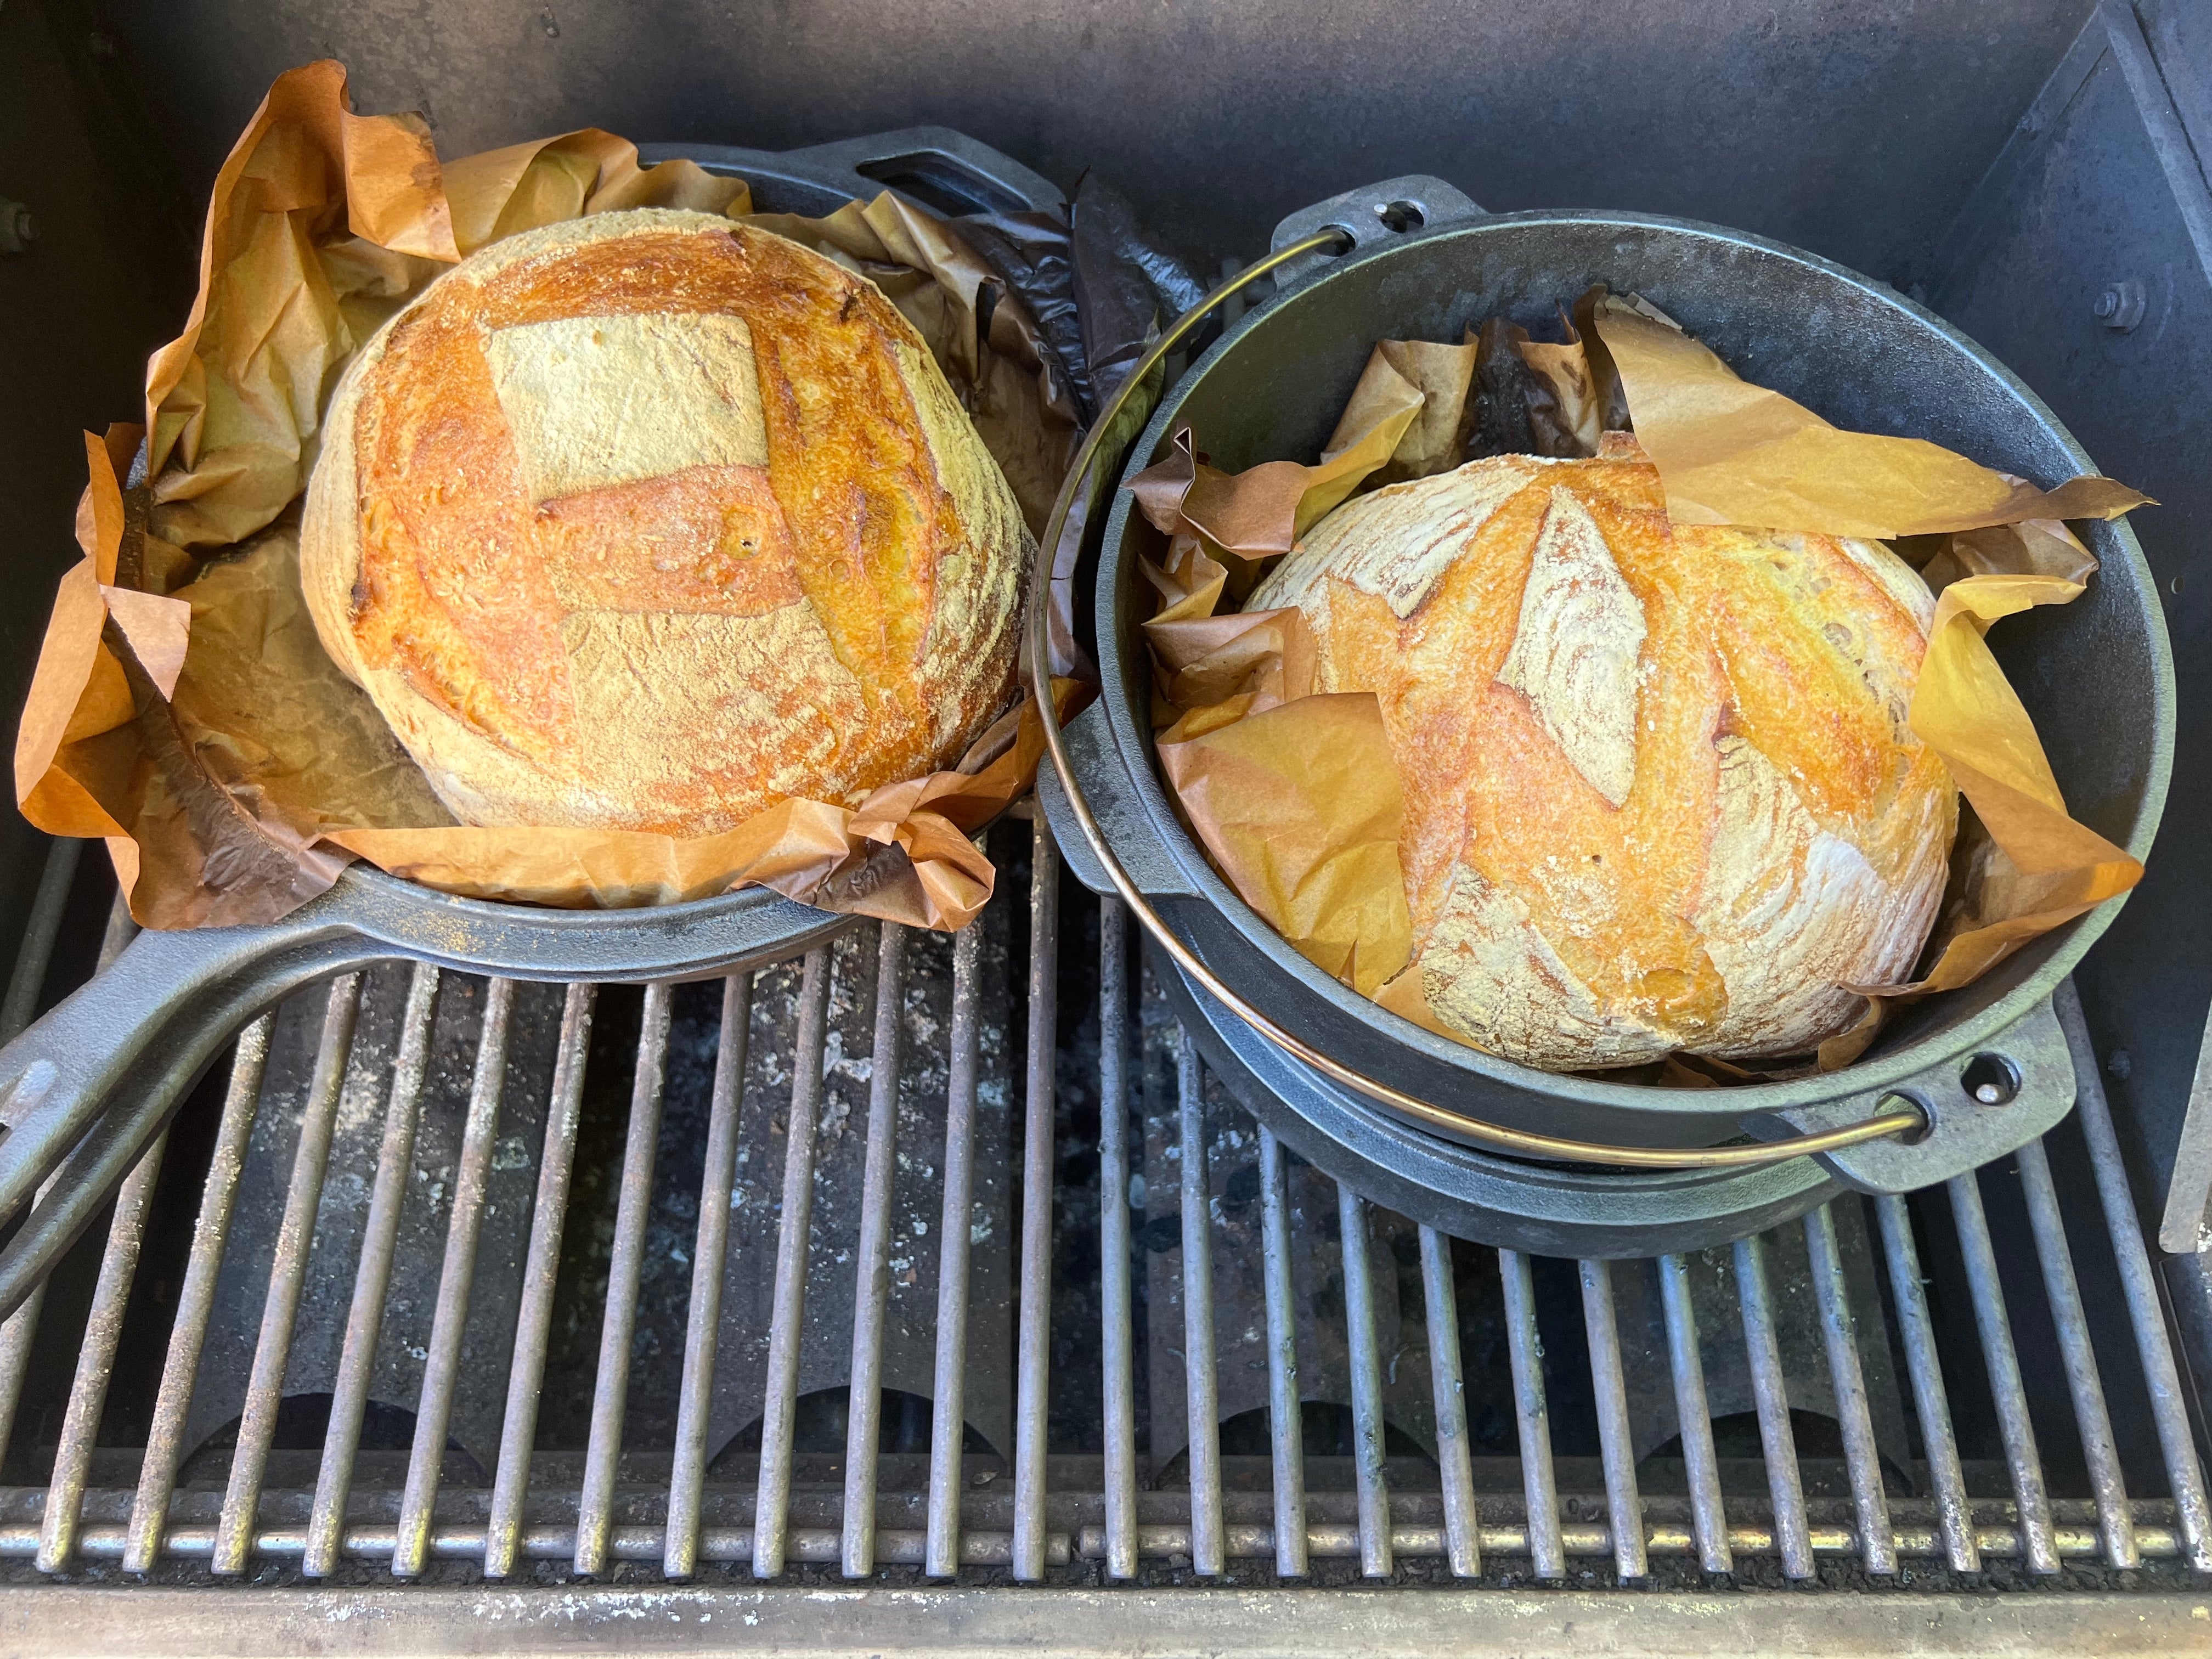 Heat Oven to 350: Mock Sourdough Bread